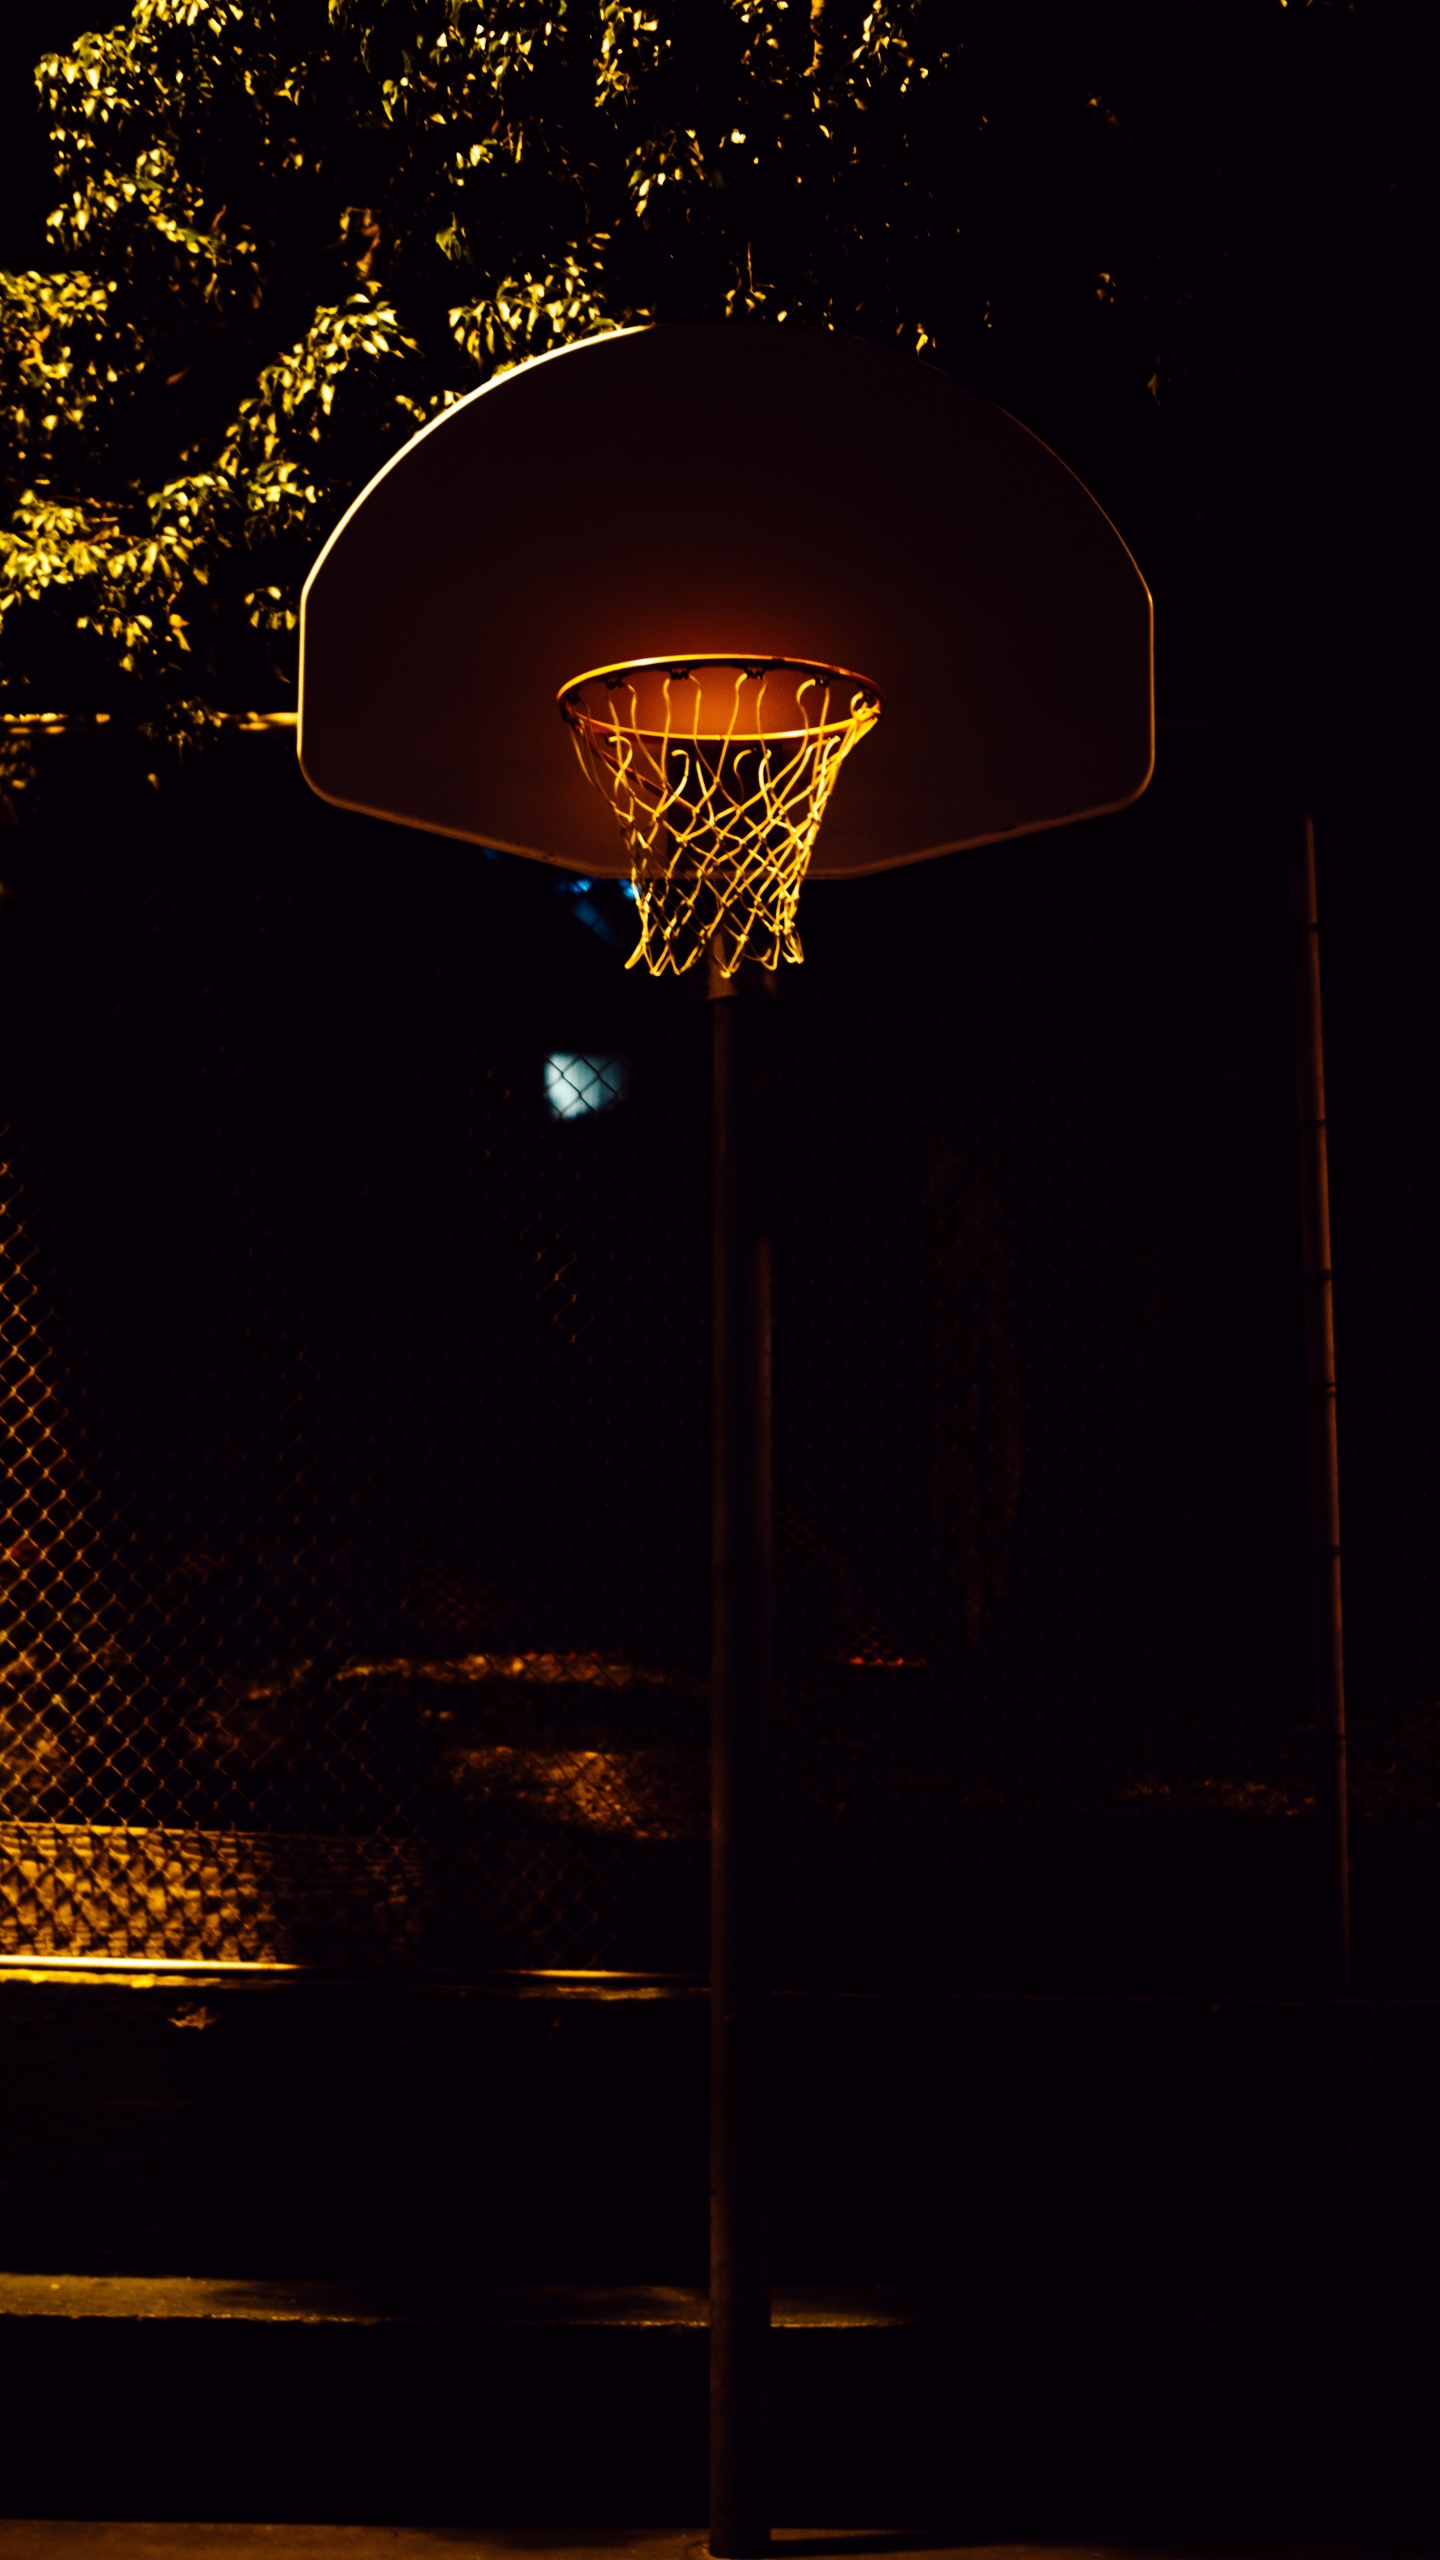 Canasta de Baloncesto Con Luz Encendida Durante la Noche.. Wallpaper in 1440x2560 Resolution